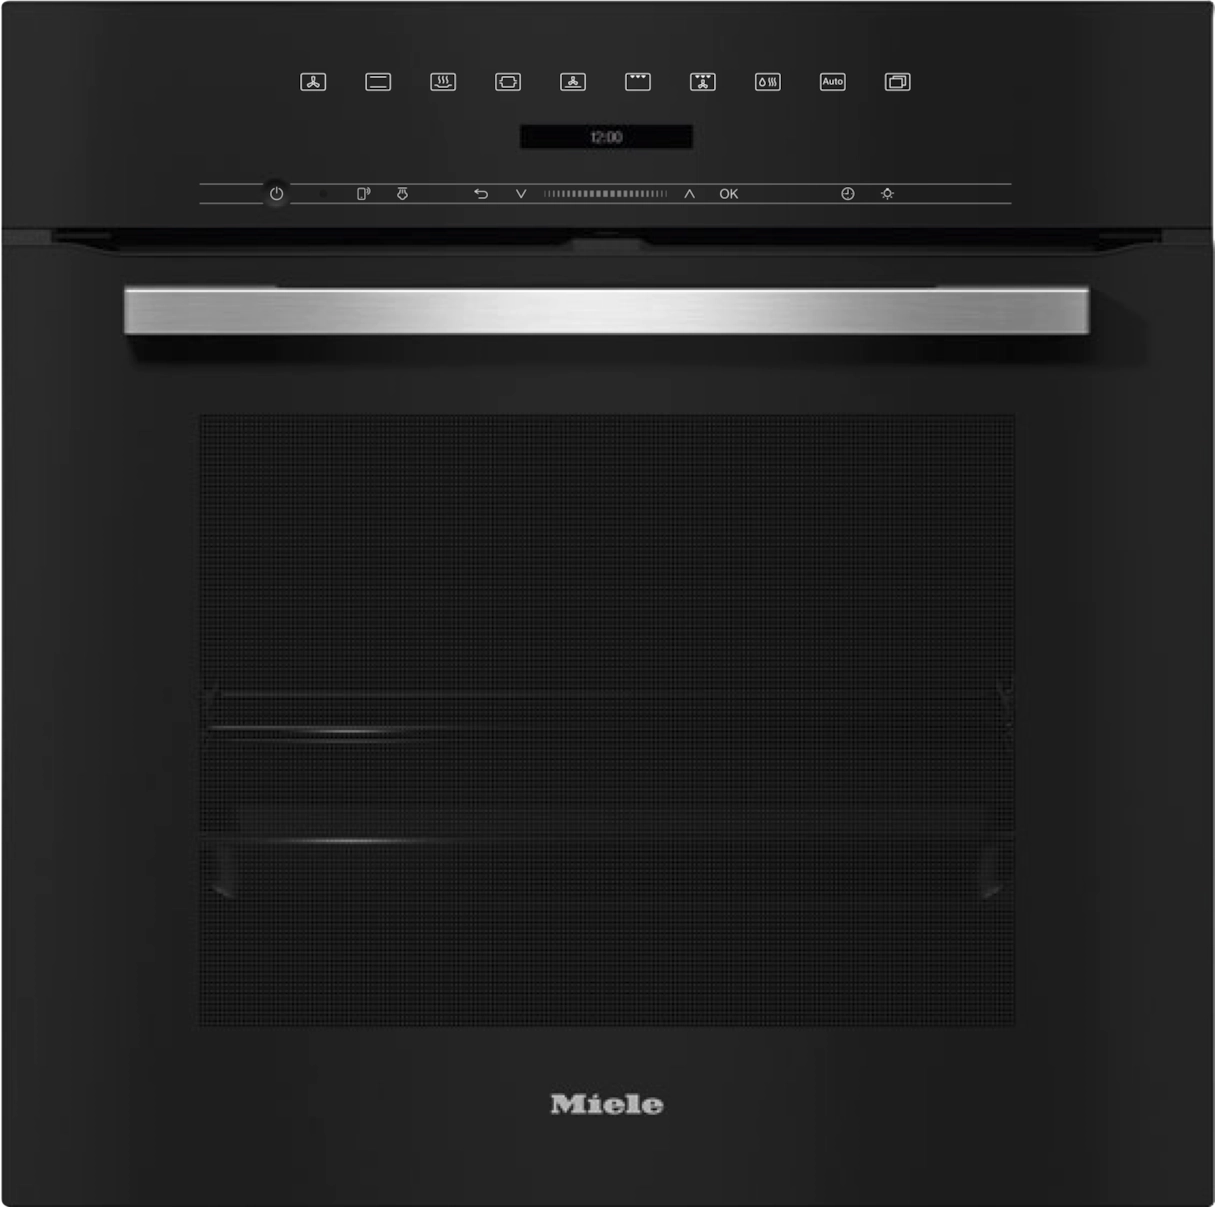 MIELE DGC7151OBSW multifunctionele oven met stoom - 60cm